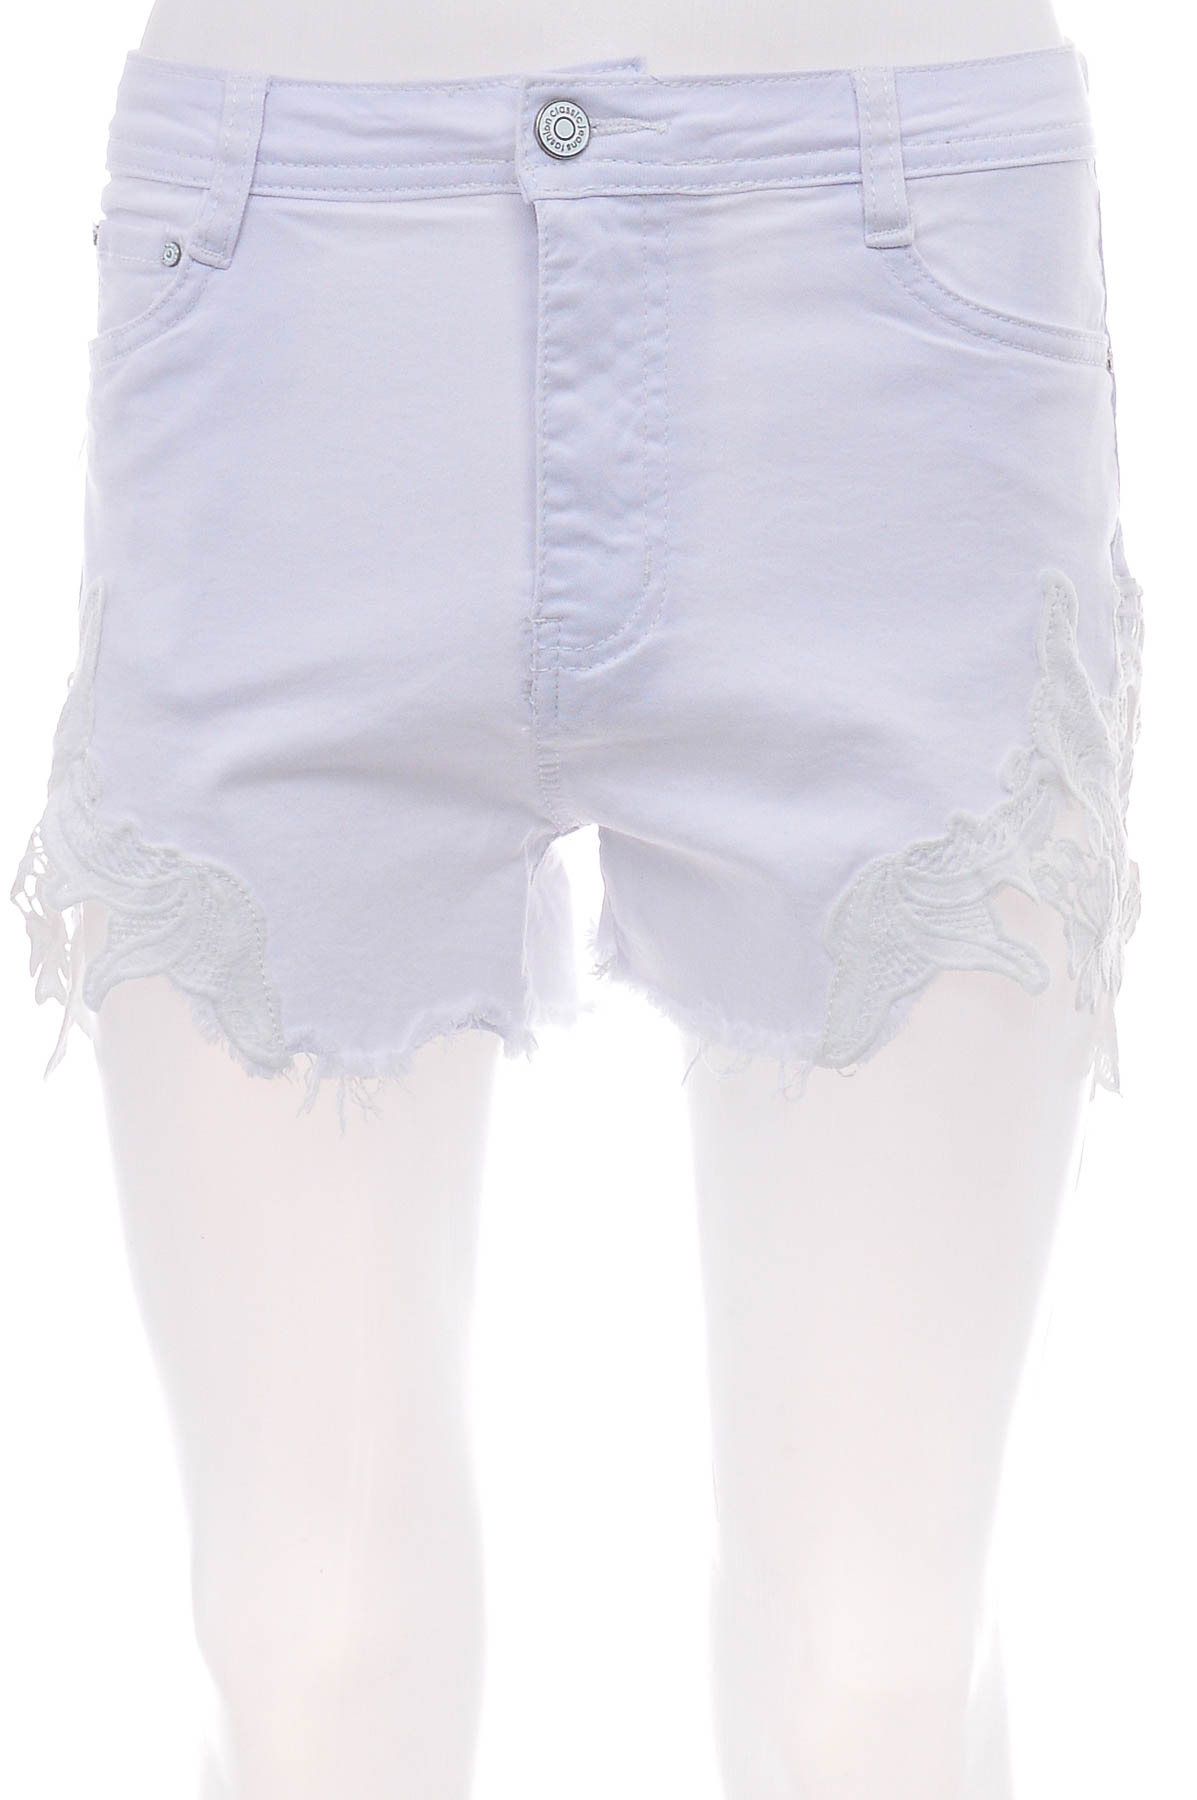 Female shorts - Melody - 0